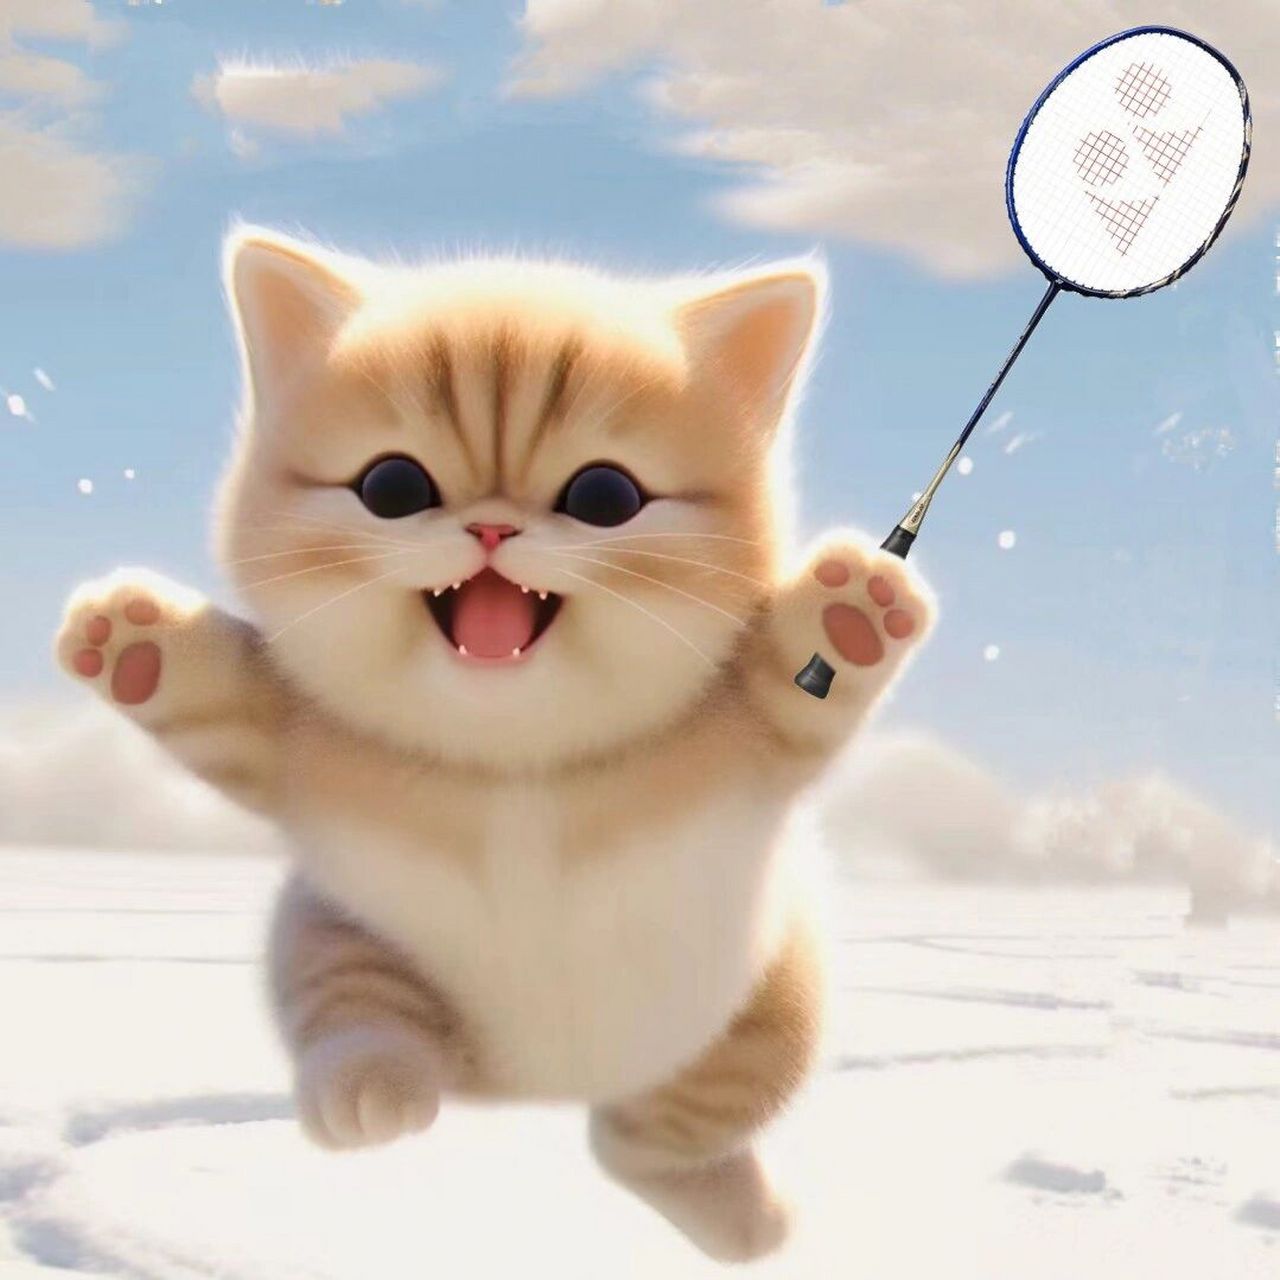 超级可爱的猫咪9615微信头像 喜欢打羽毛球的宝贝可以存起来啦!